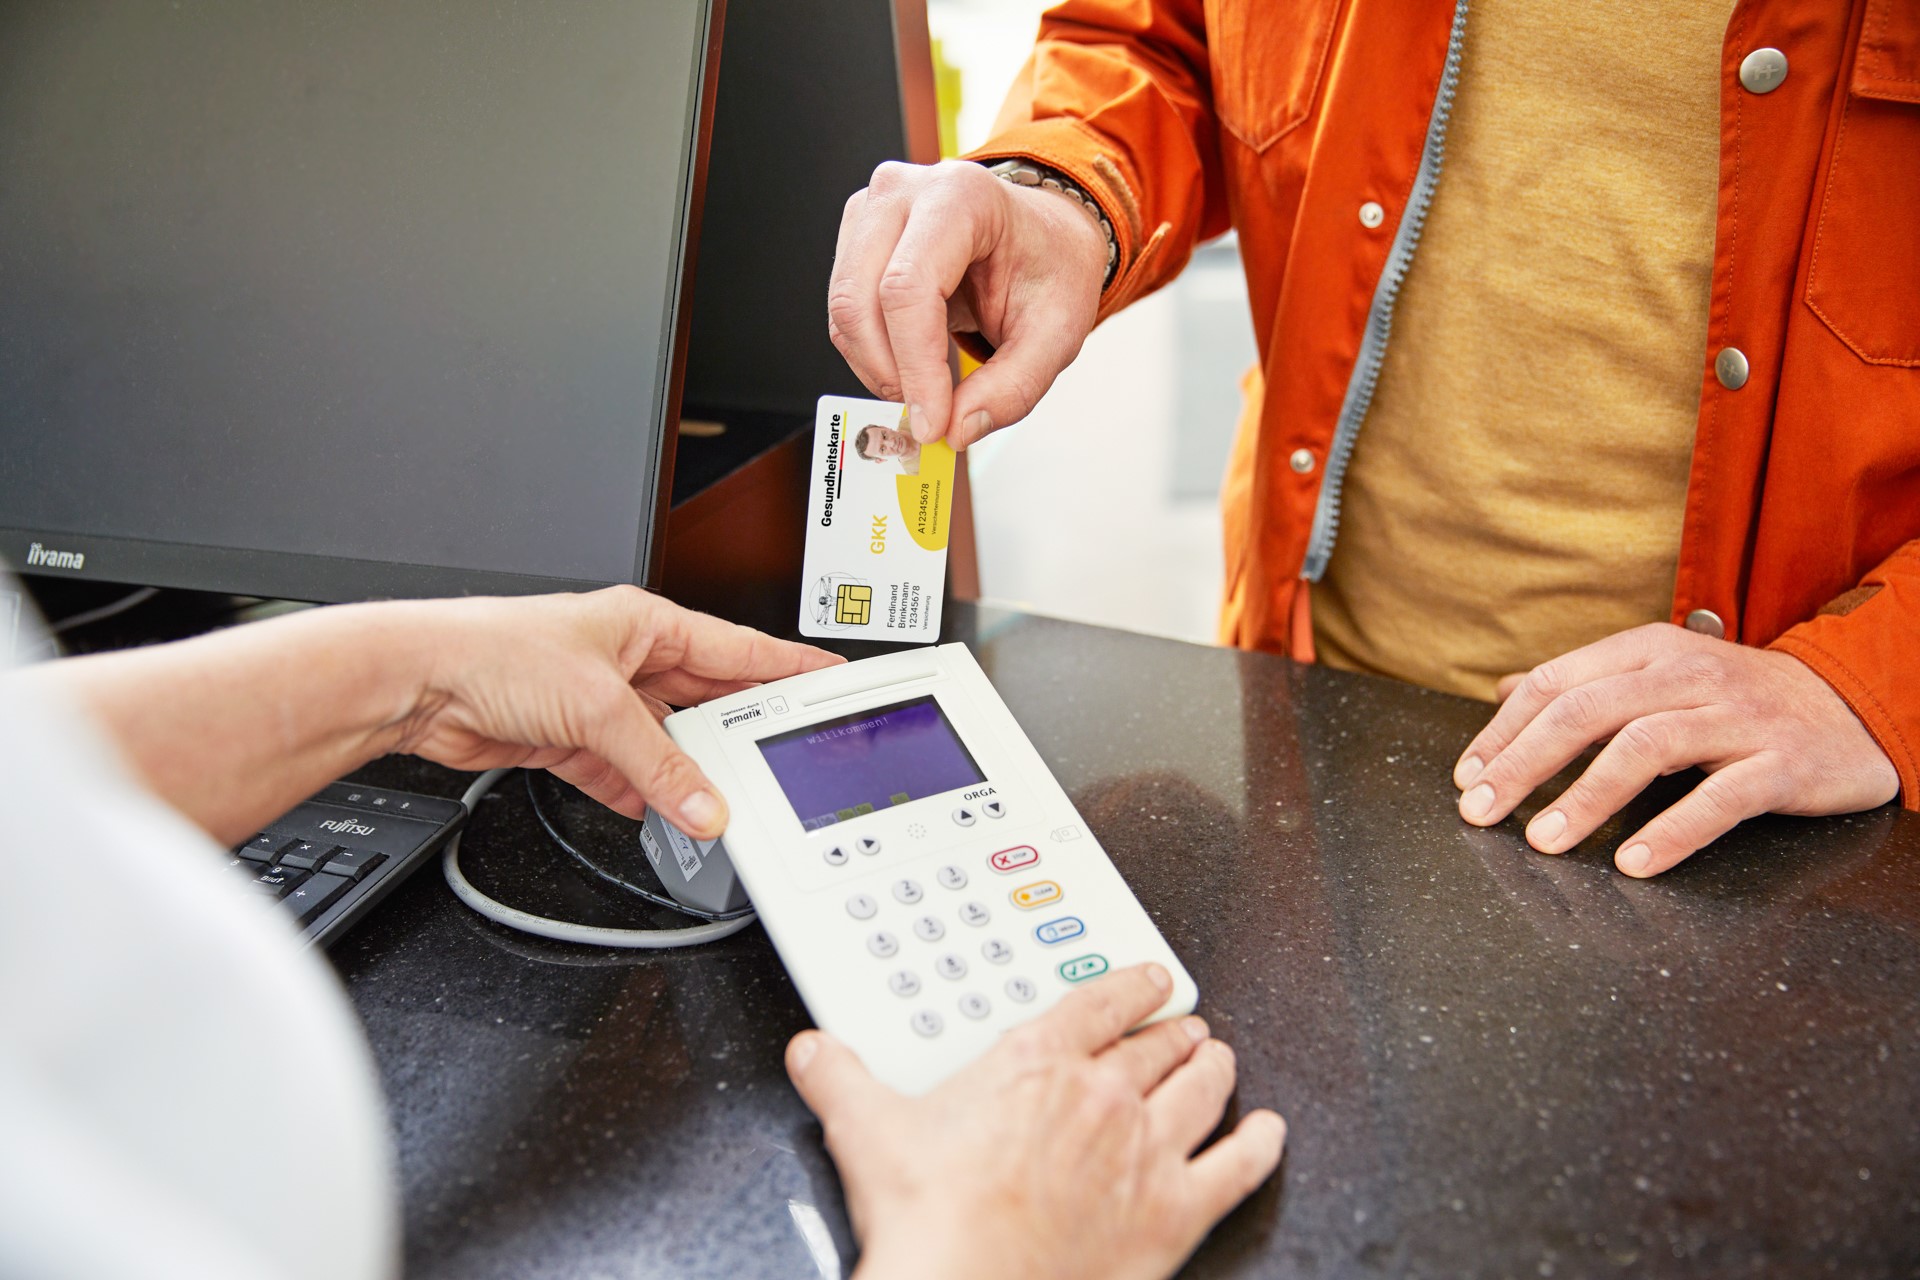 Ein Patient löst in der Apotheke sein E-Rezept mit der elektronischen Gesunheitskarte ein. Dazu steckt er diese in das Kartenlesegerät der Apotheke.